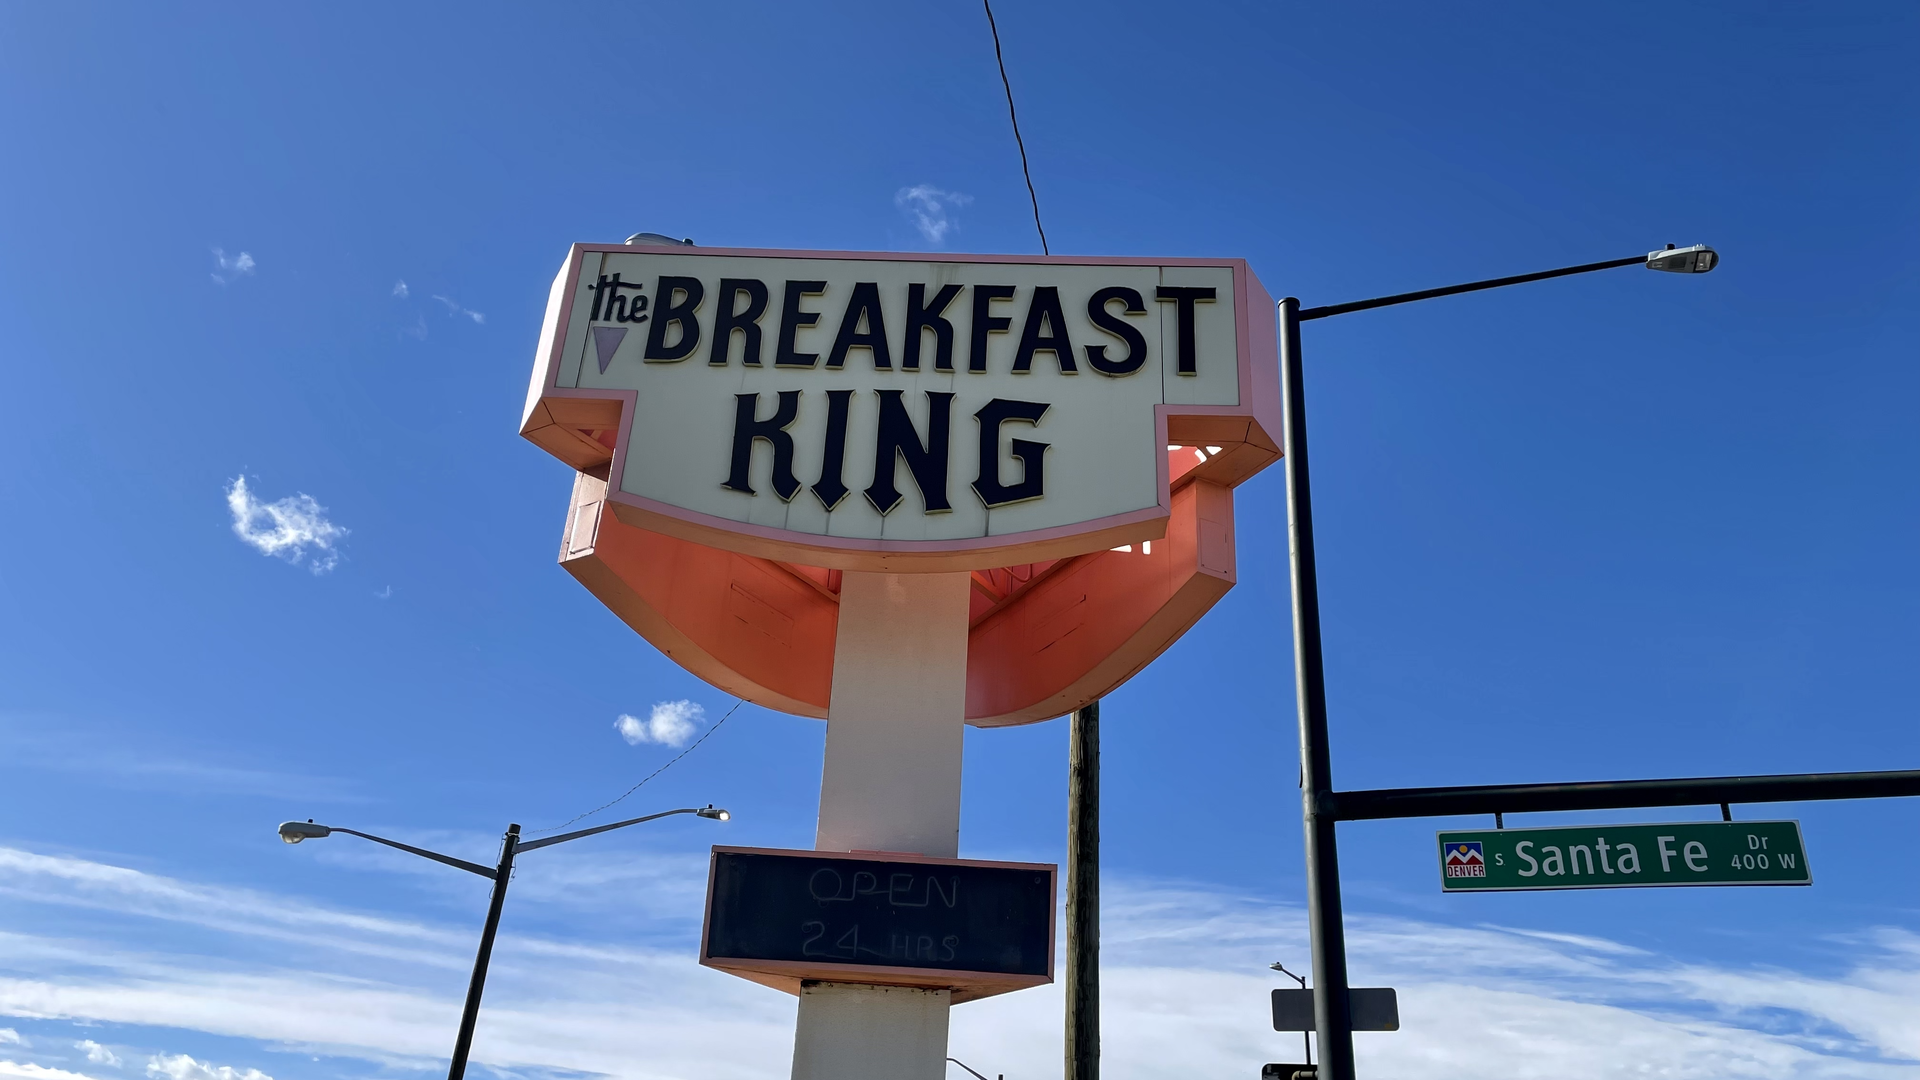 The now-closed Breakfast King on Santa Fe Drive. Photo: John Frank/Axios